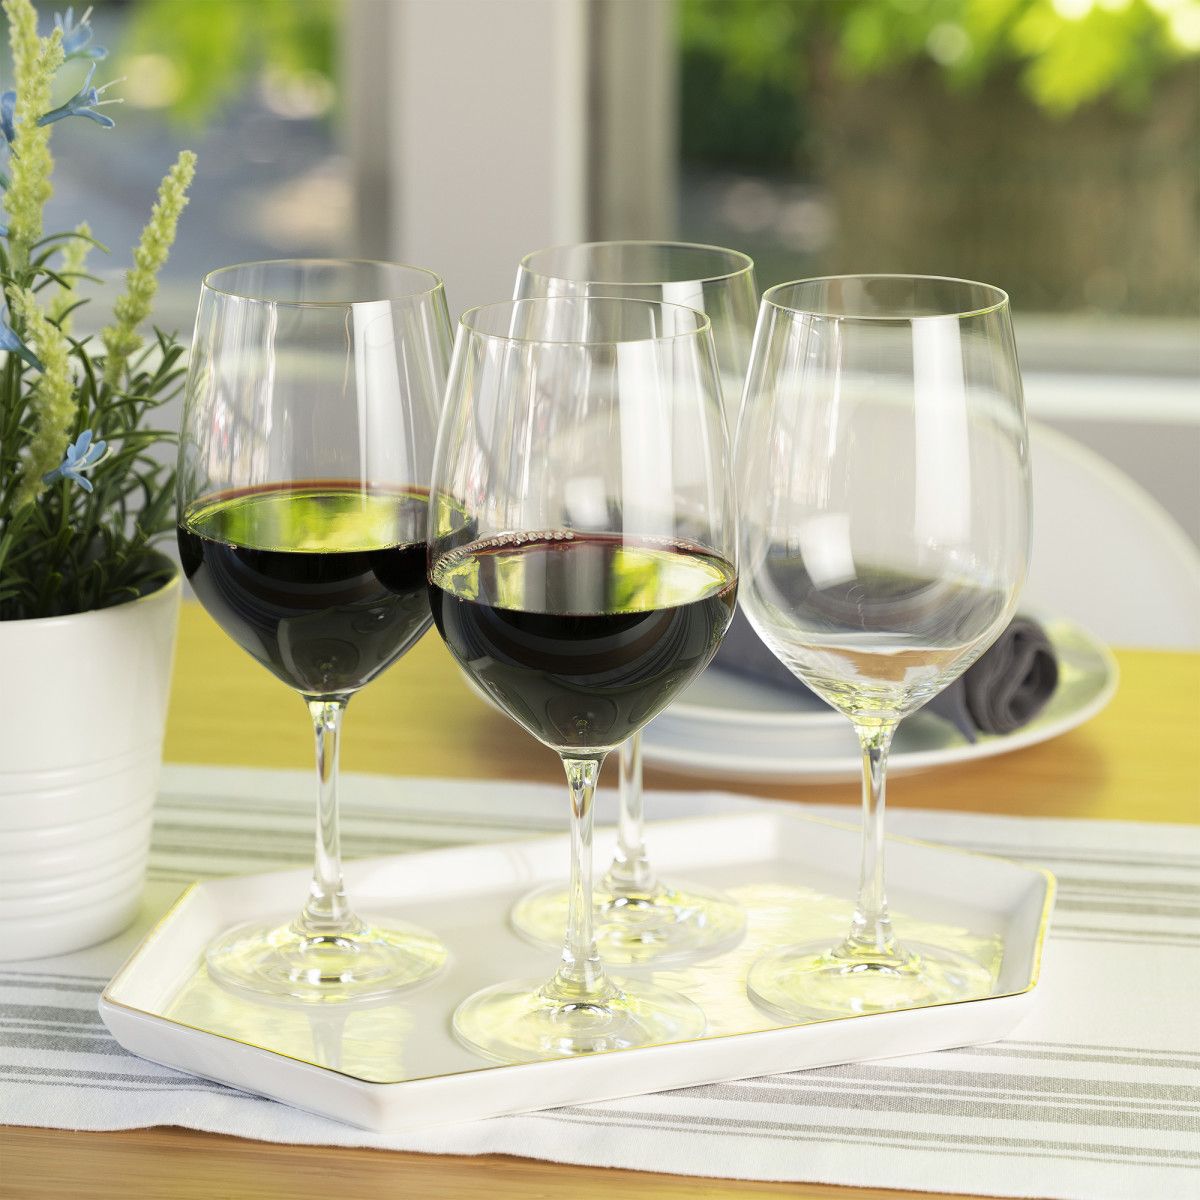 Spiegelau Definition 26 oz Bordeaux Glass (Set of 2)